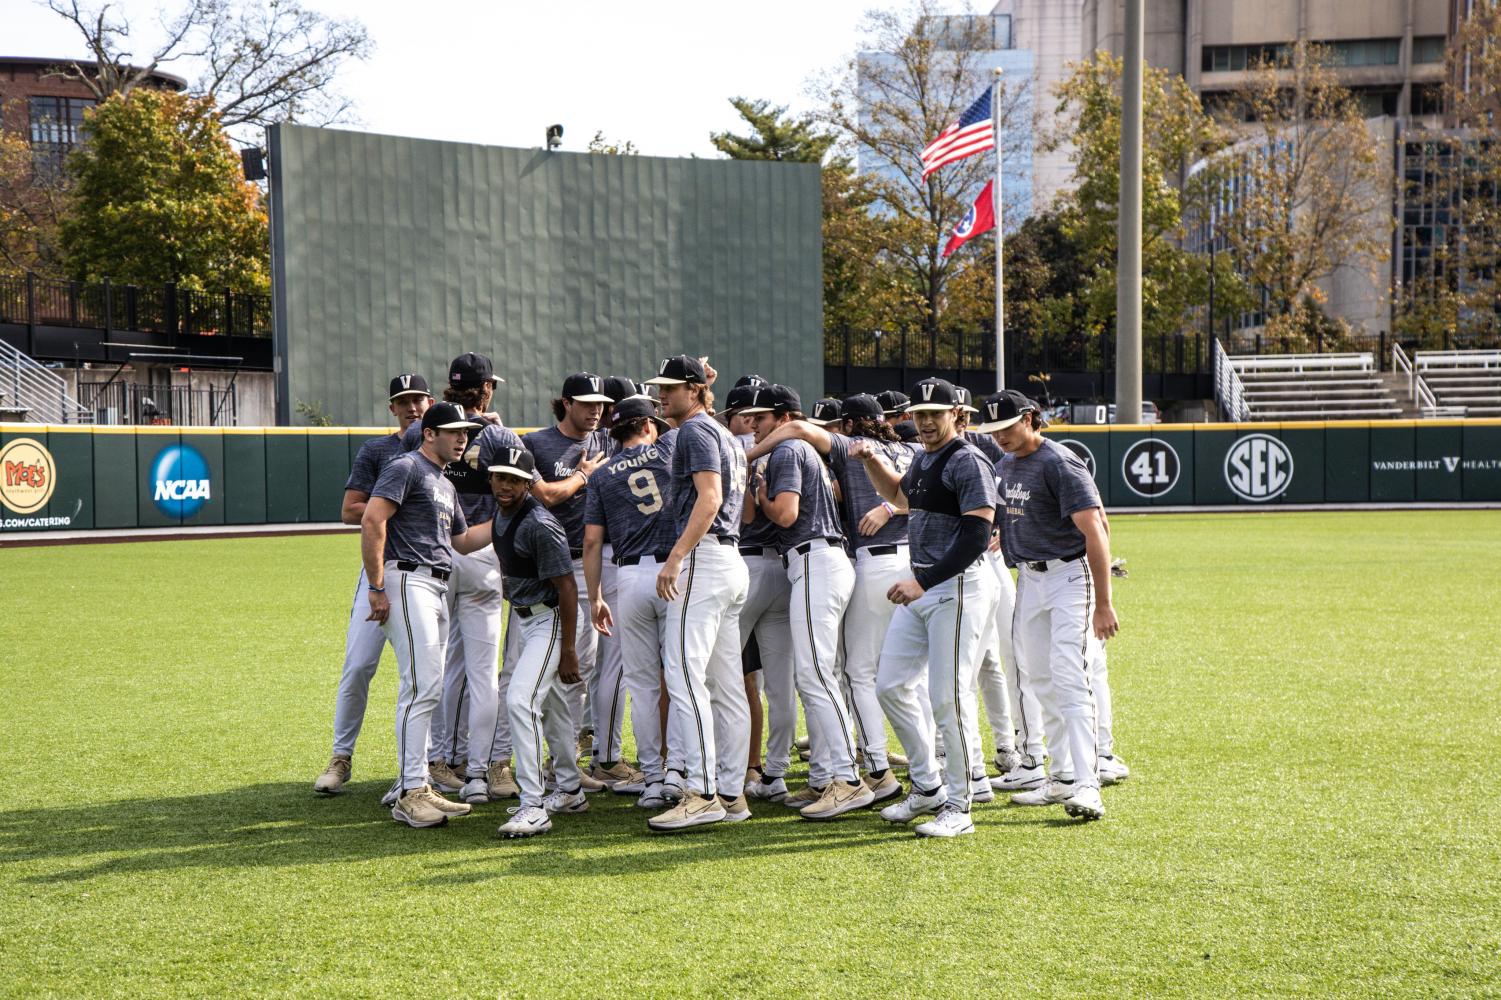 NCAA Baseball on X: [BREAKING] Vanderbilt University set to